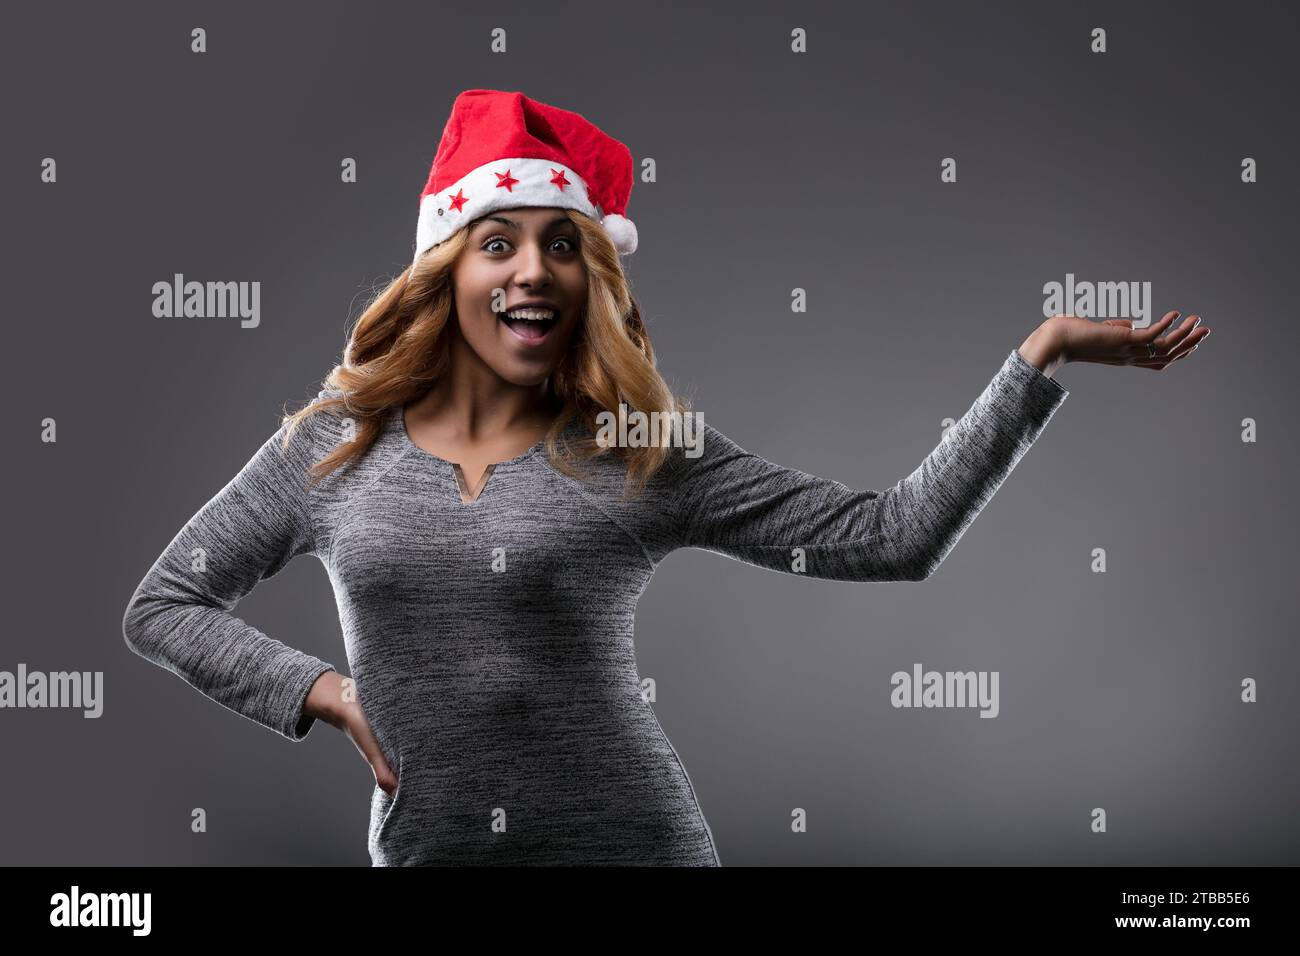 Mit einem Weihnachtsmann-Hut und einem fröhlichen Lächeln verkörpert sie die Stimmung der Saison, wie IHR PRODUKT zeigt Stockfoto